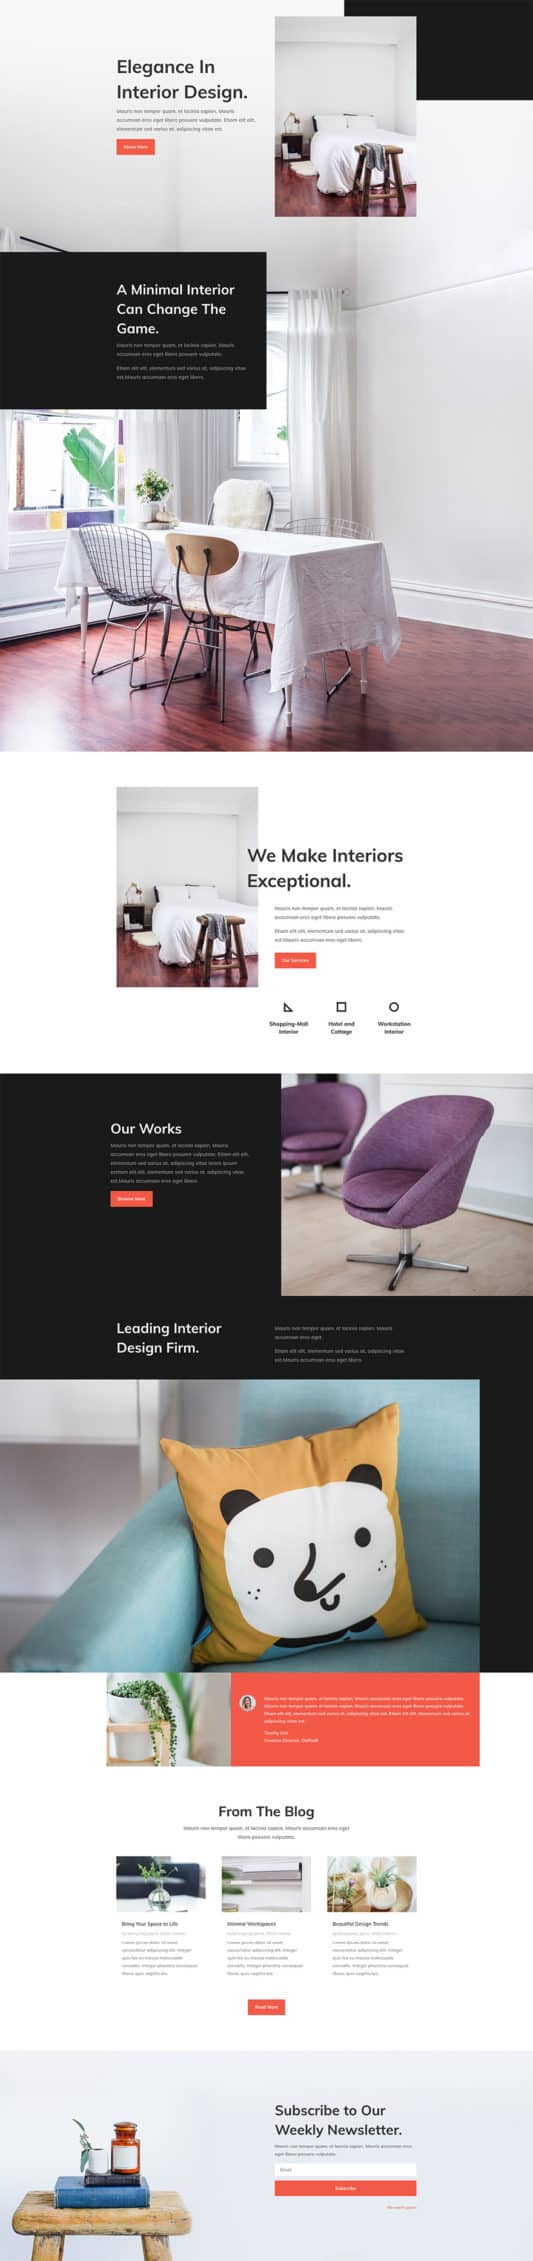 Interior Design Company Web Design 5